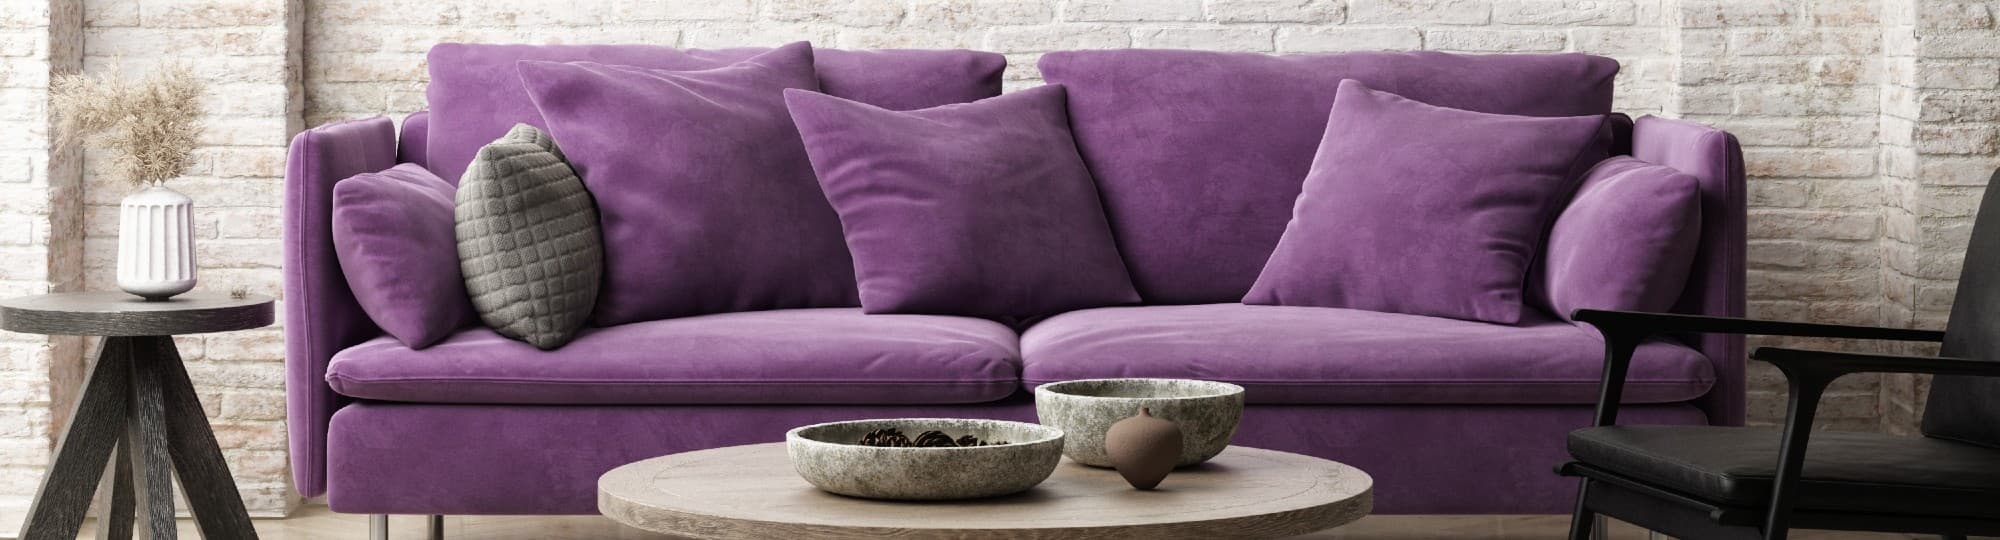 purple-living-area